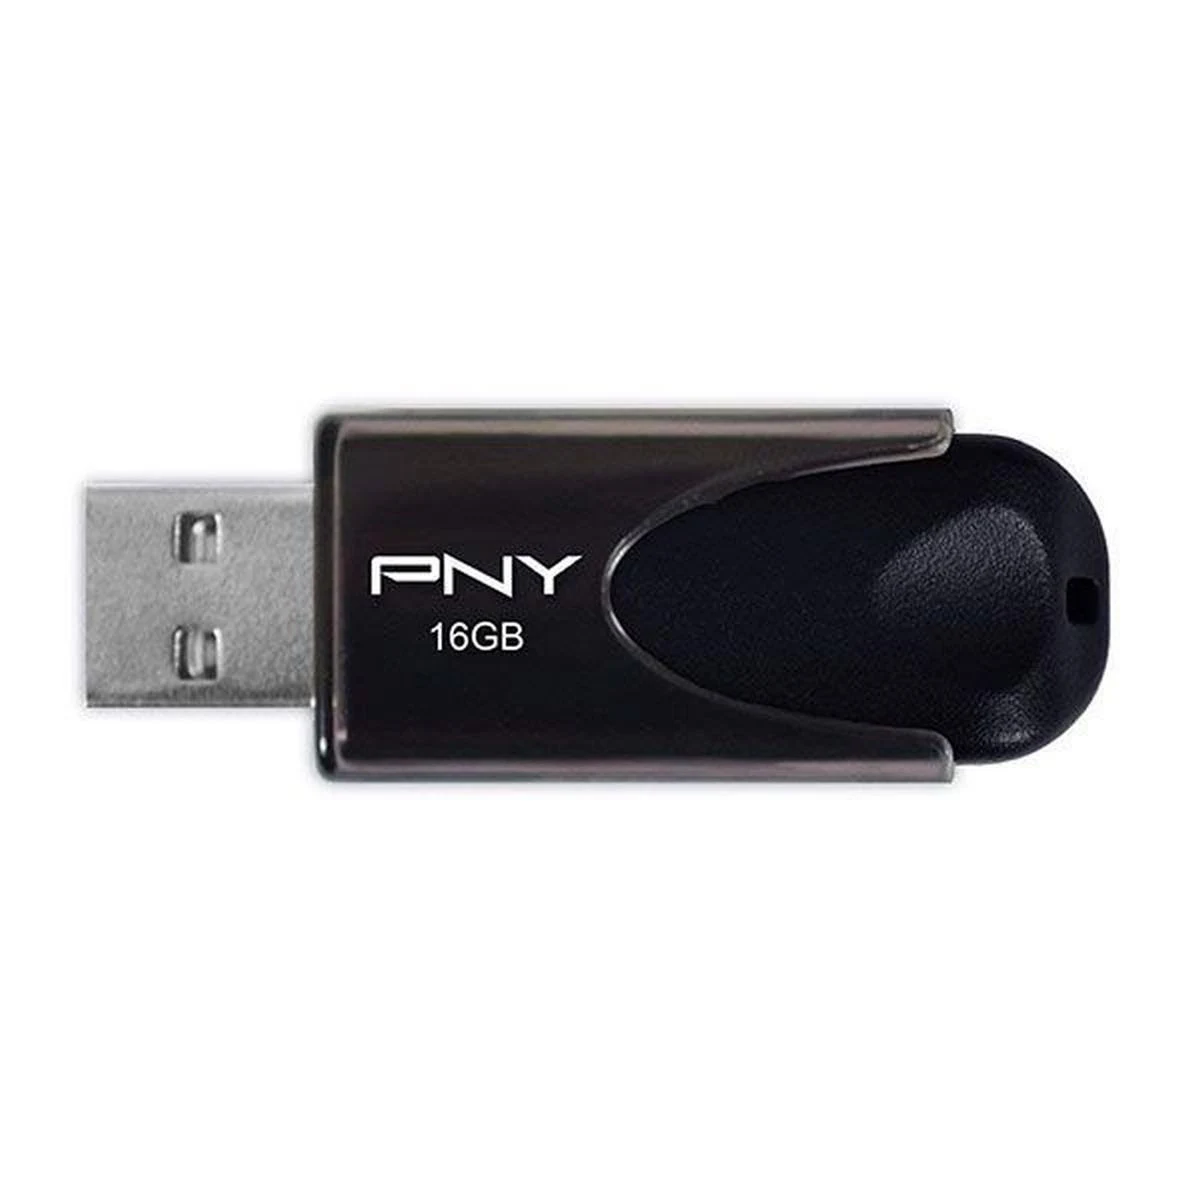 GB) STICK PNY 16GB Attaché USB-Flash-Laufwerk (Schwarz, 4 2.0 16 PNY